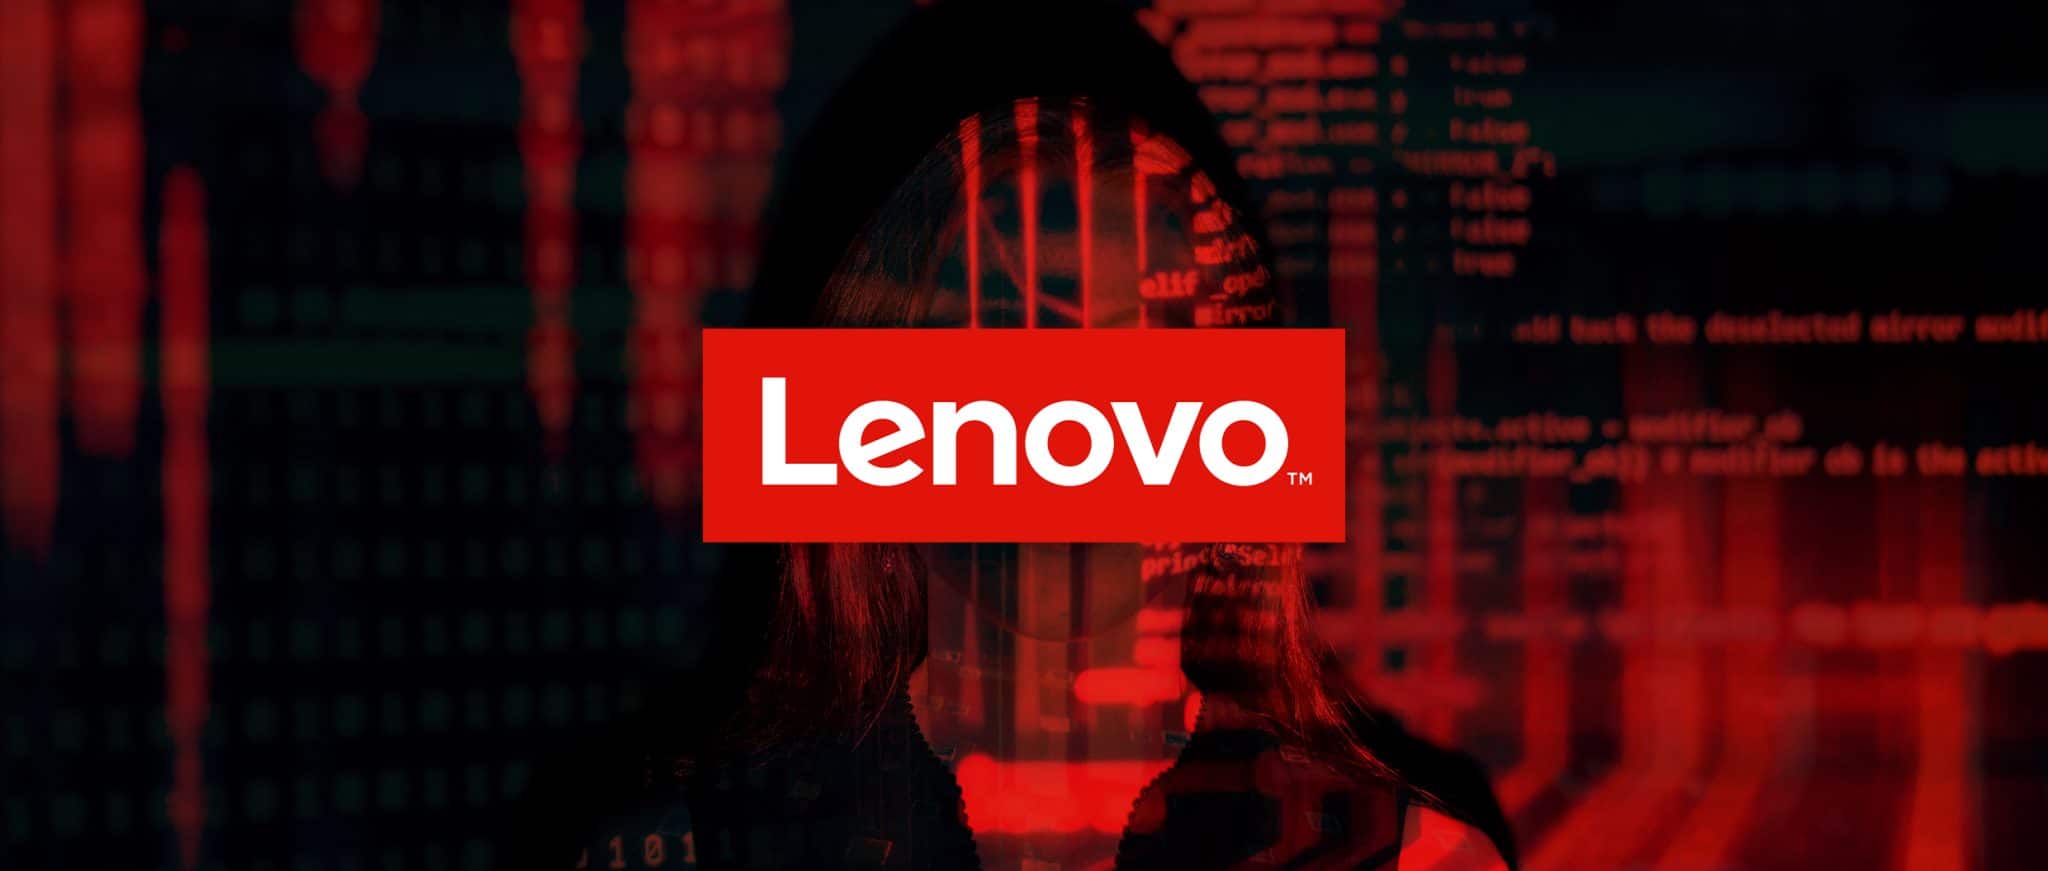 lenovo banner with logo